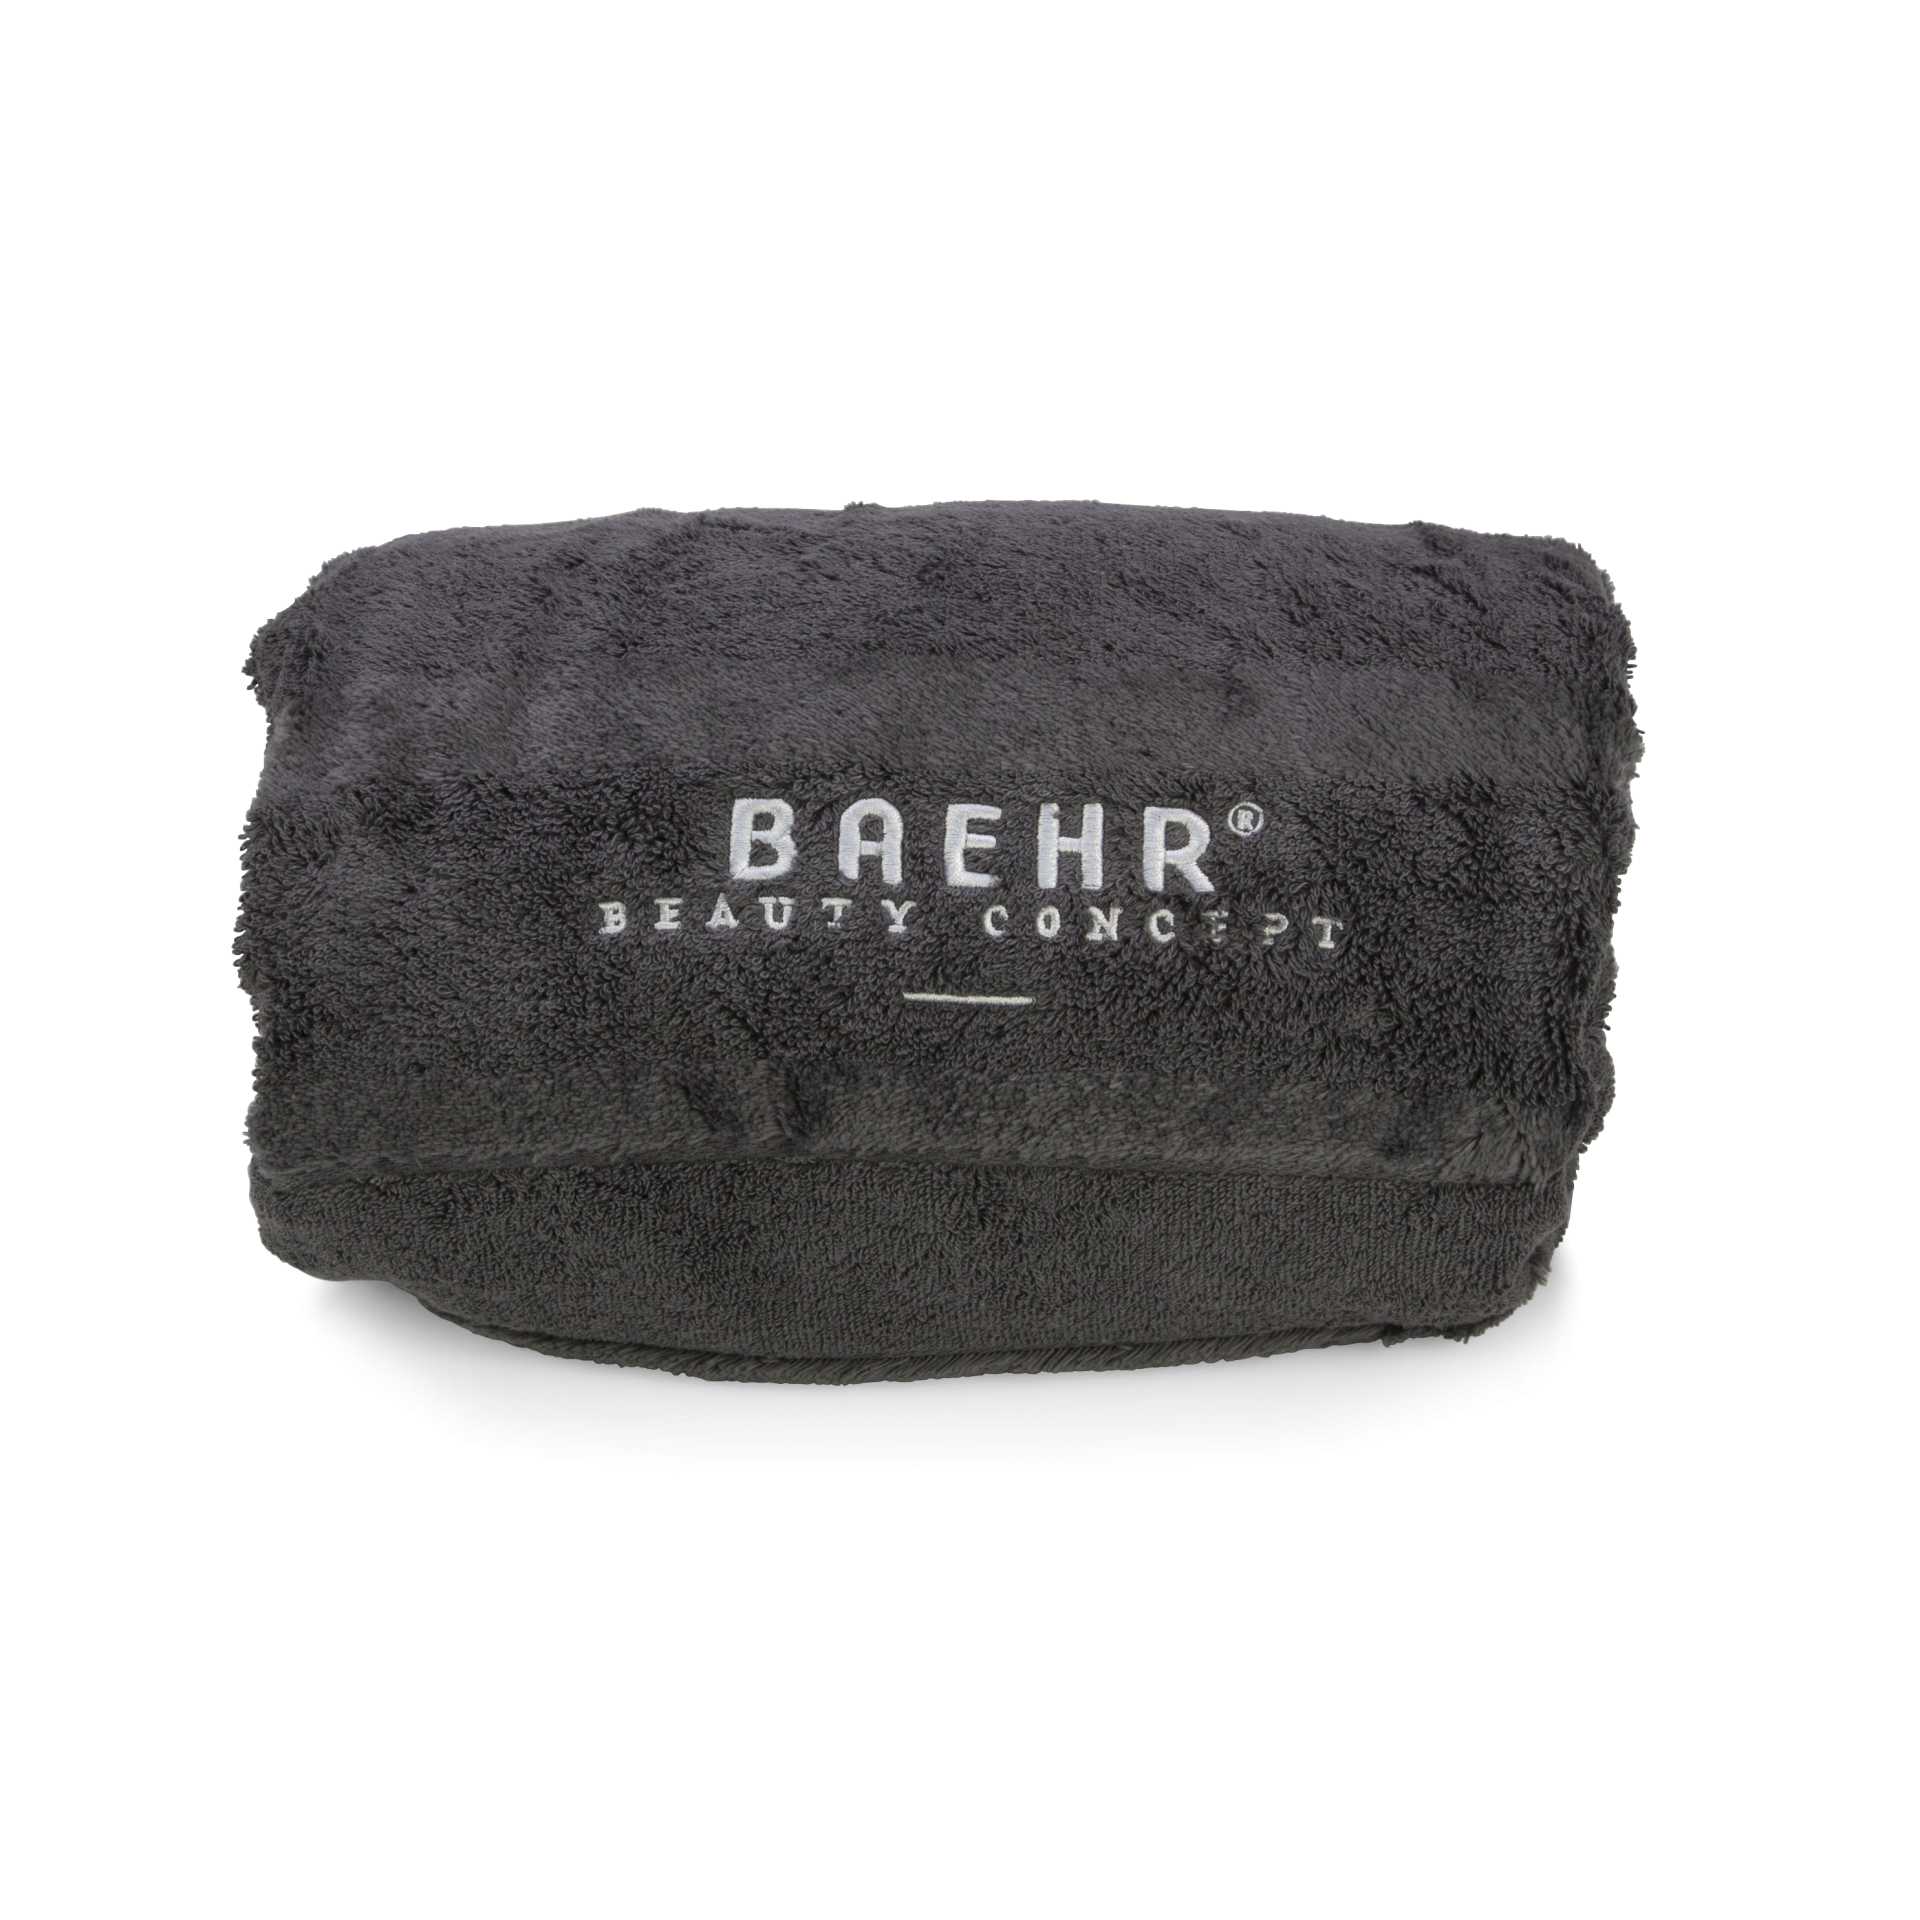 BAEHR-Handtuch mit "BAEHR BEAUTY CONCEPT" Logo, 160 x 80 cm